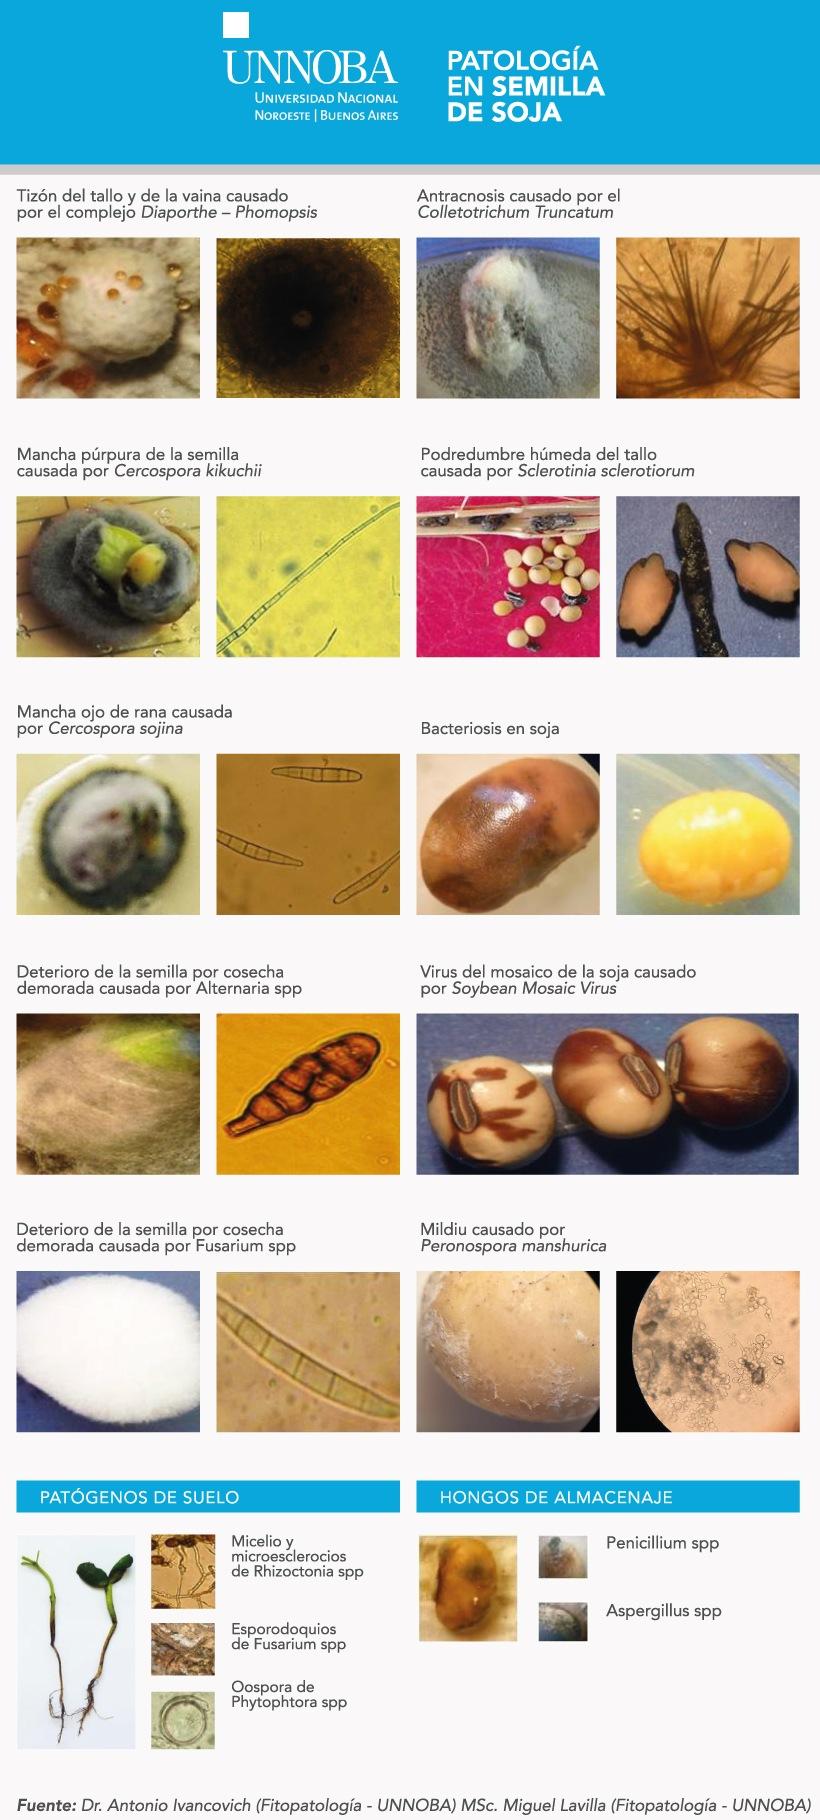 Soja: Patología en semillas y fungicidas curasemillas utilizados - Image 1